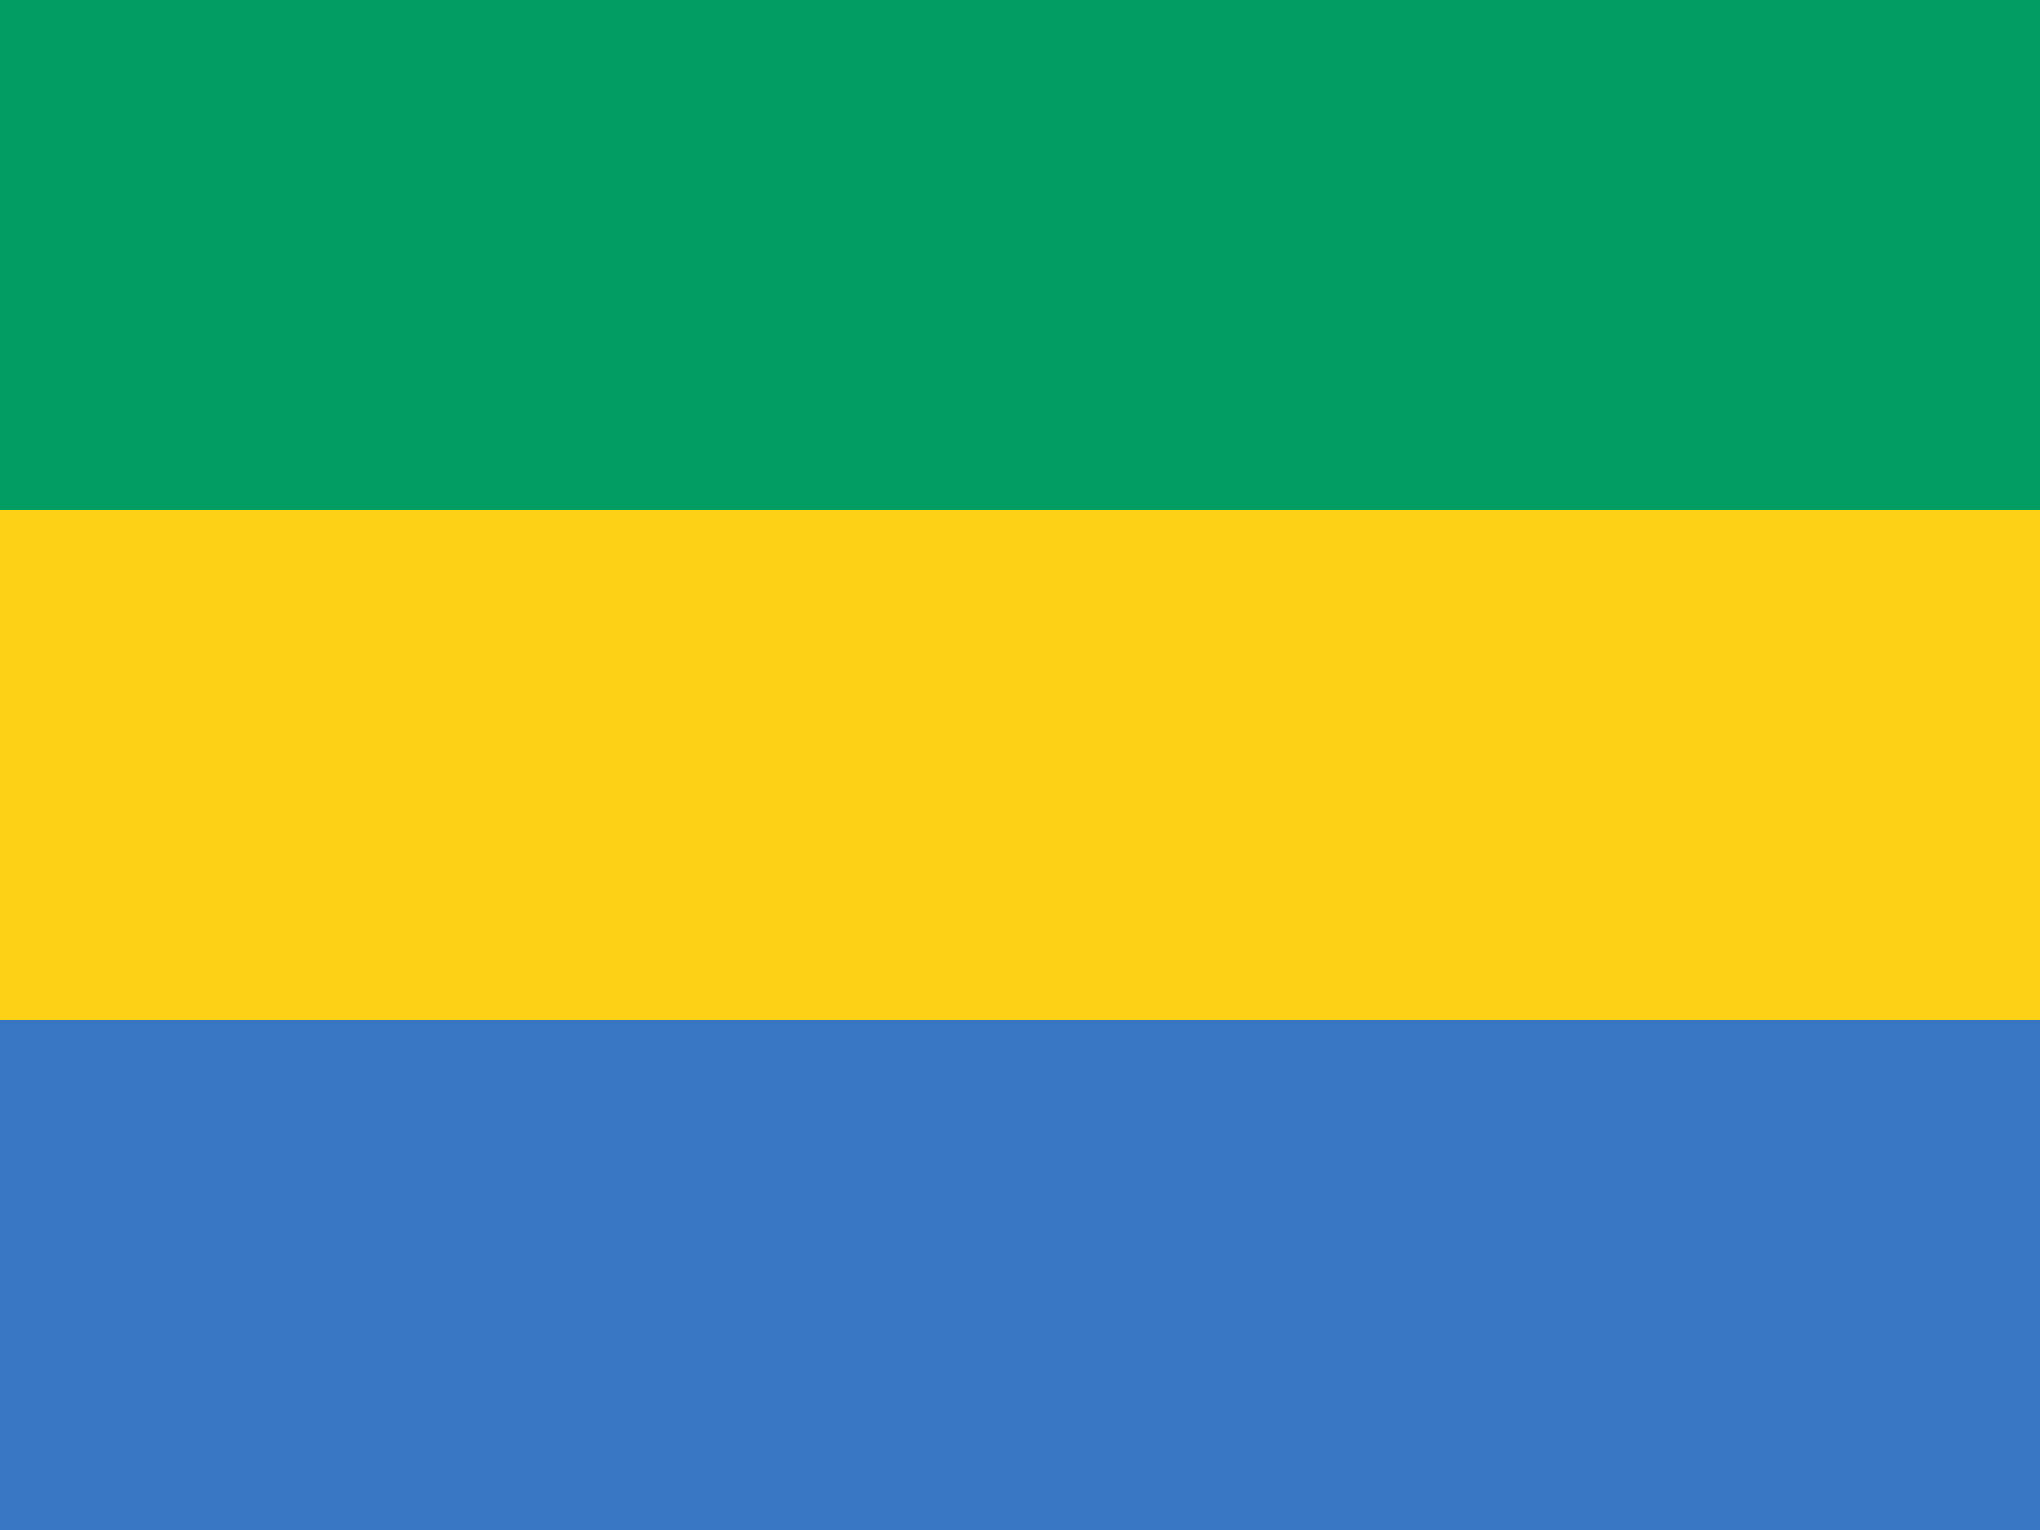 Bild der Staatsflagge Gabon - mit einer Auflösung von 2040x1530 - Afrika